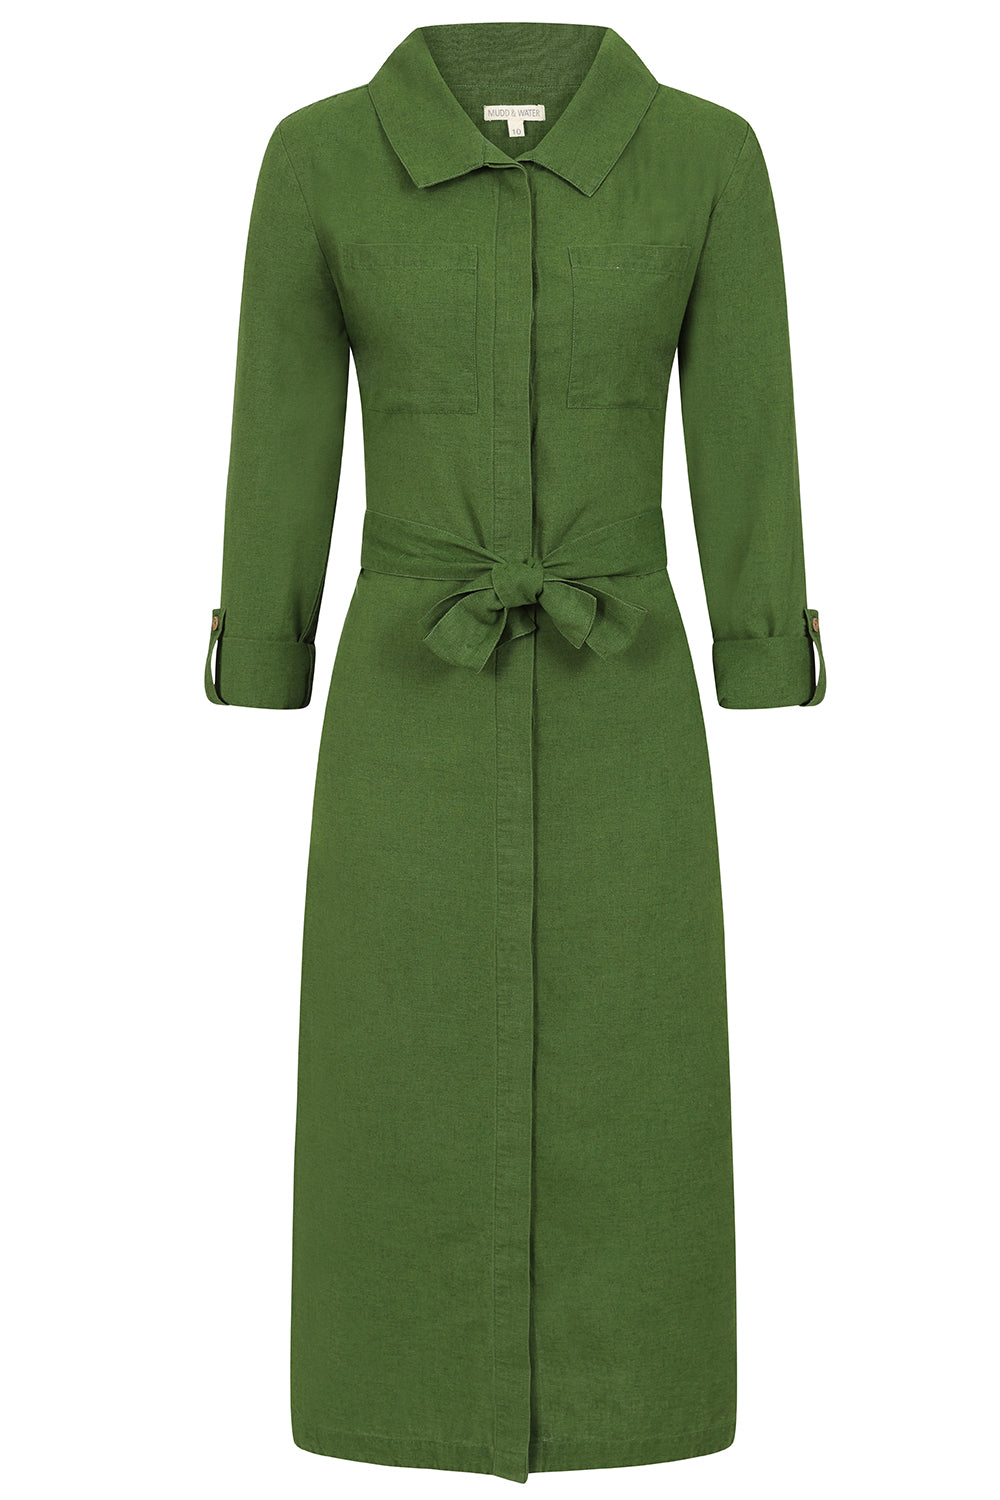 Hudson Dress - Green - Organic Cotton Linen Blend